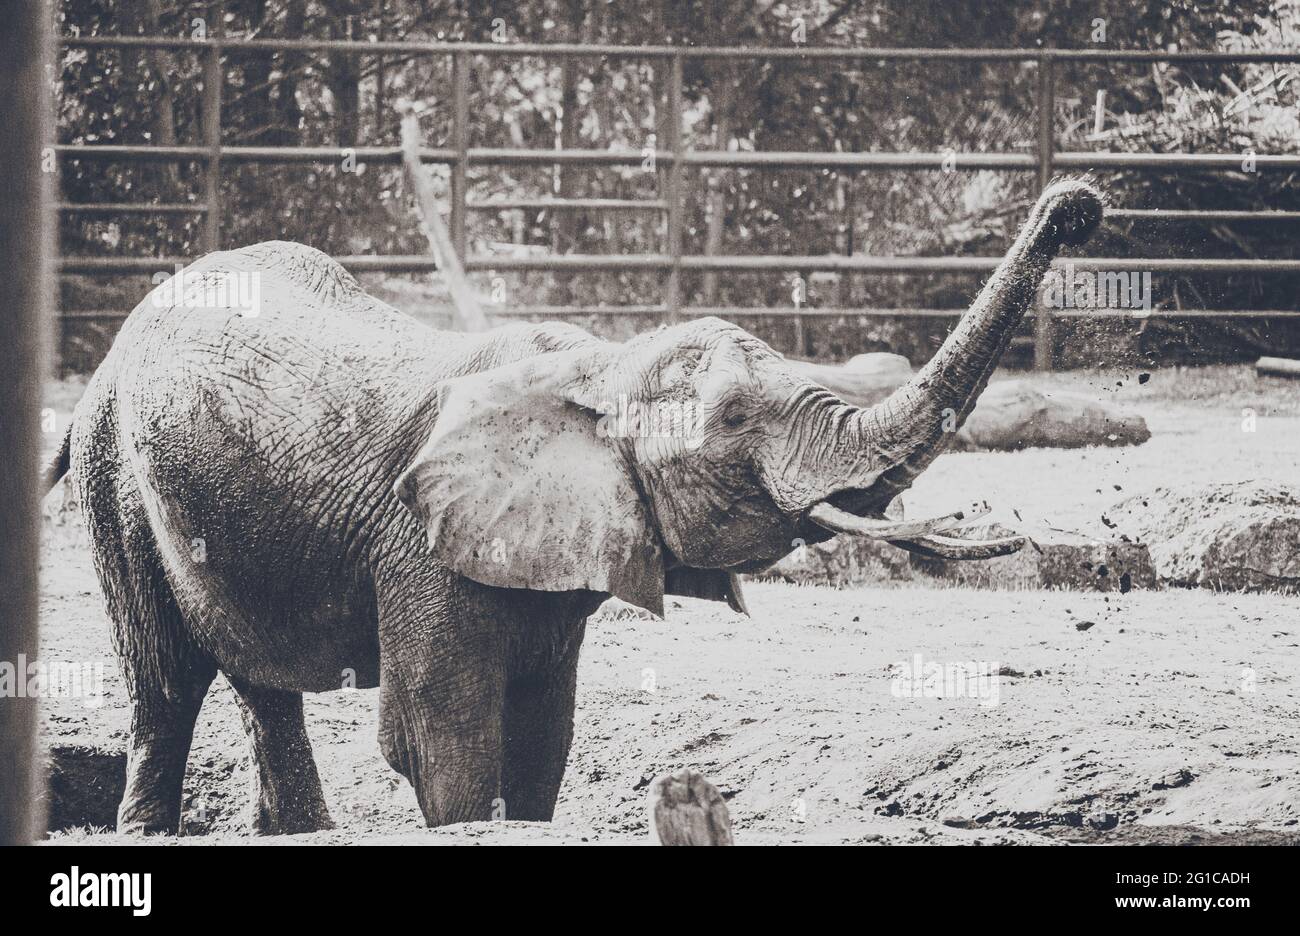 Verspielter Elefant im Serengeti Tierpark - Nahaufnahme des zahmen Dickhäuters in schönem schwarzweiss Monochrom Style Poster. Minimalismus Stil. Foto de stock